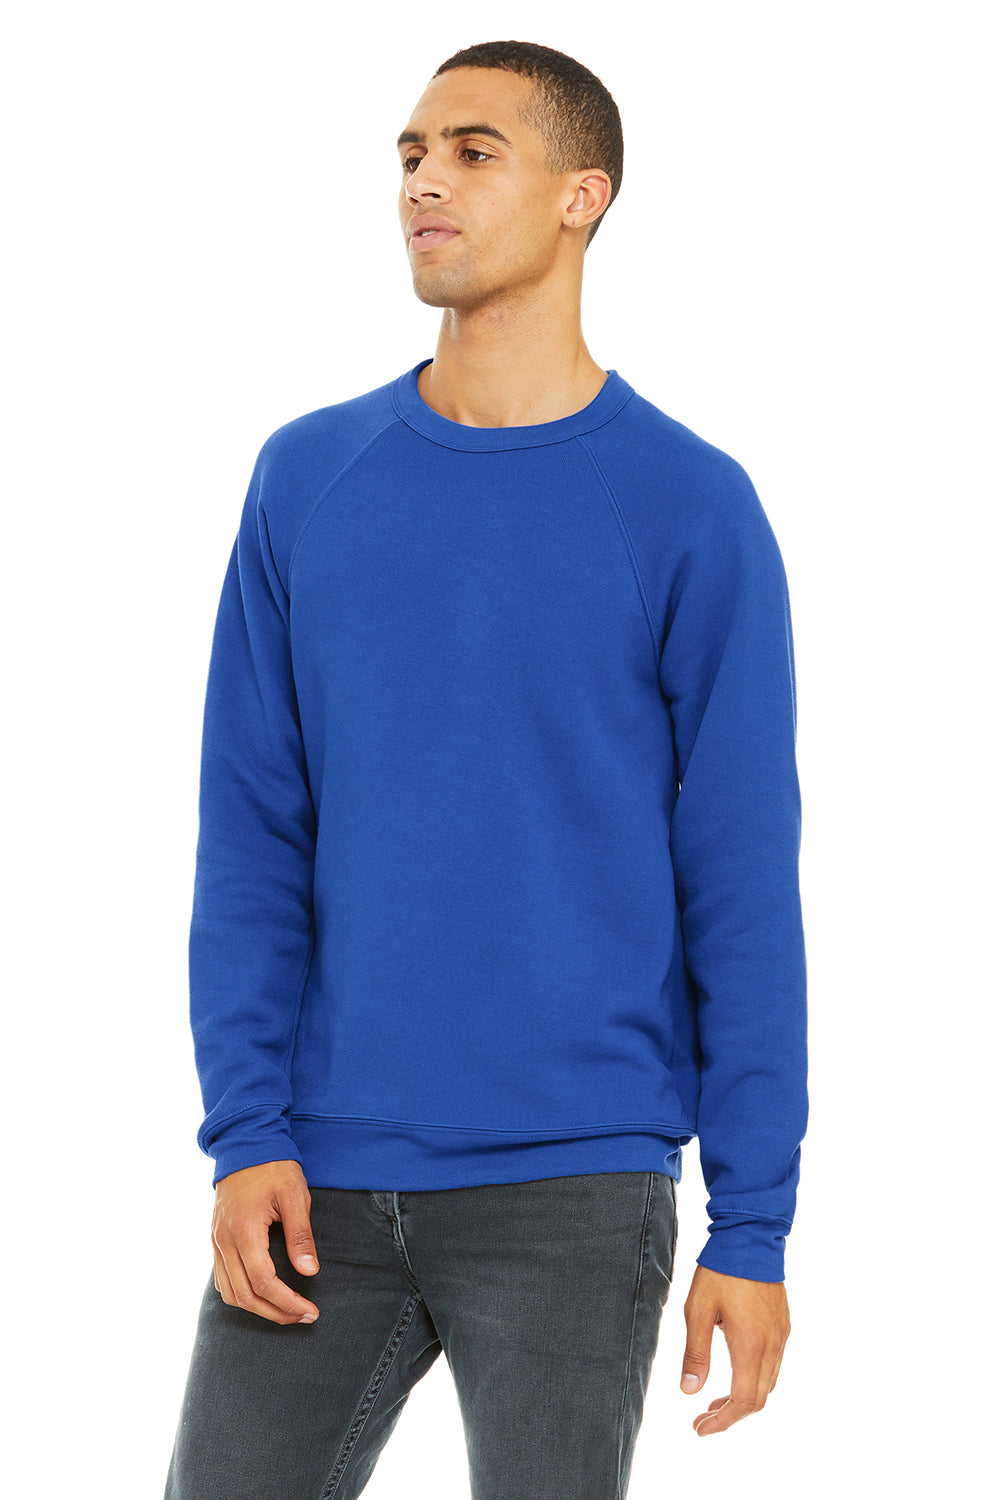 Bella + Canvas BC3901/3901 Mens Sponge Fleece Crewneck Sweatshirt True Royal Blue Model 3Q